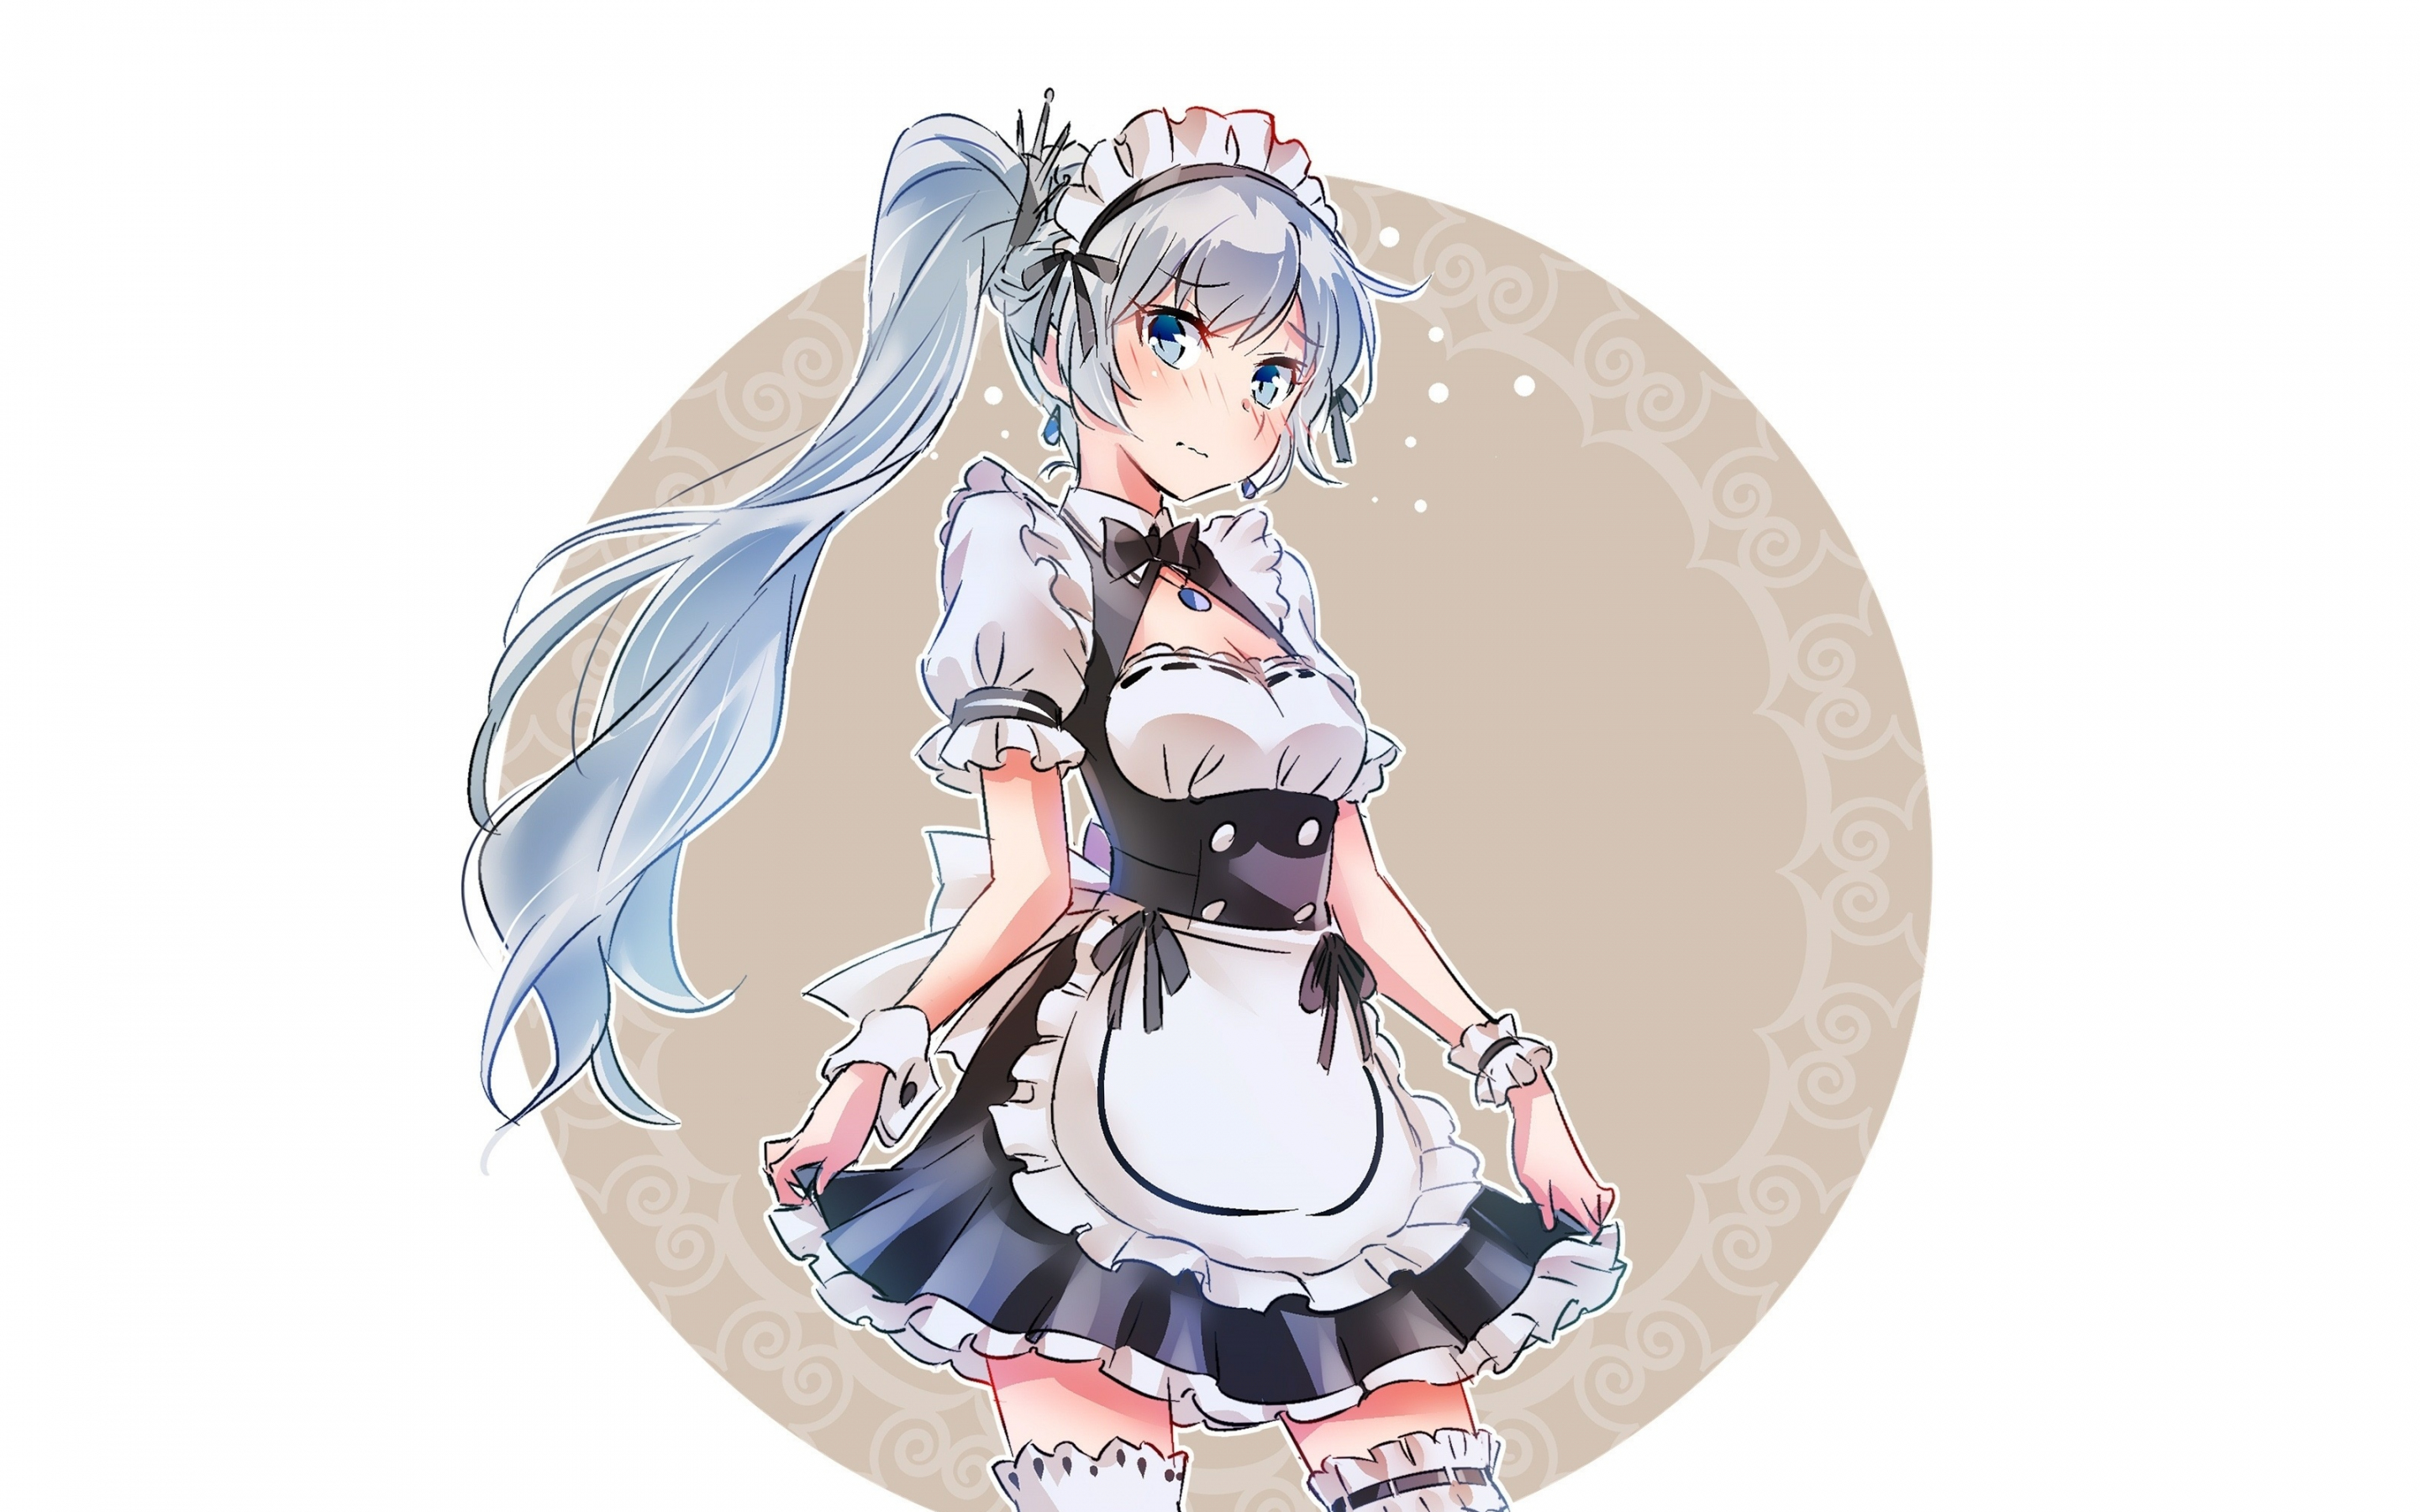 Maid, Weiss Schnee, anime girl, 2880x1800 wallpaper